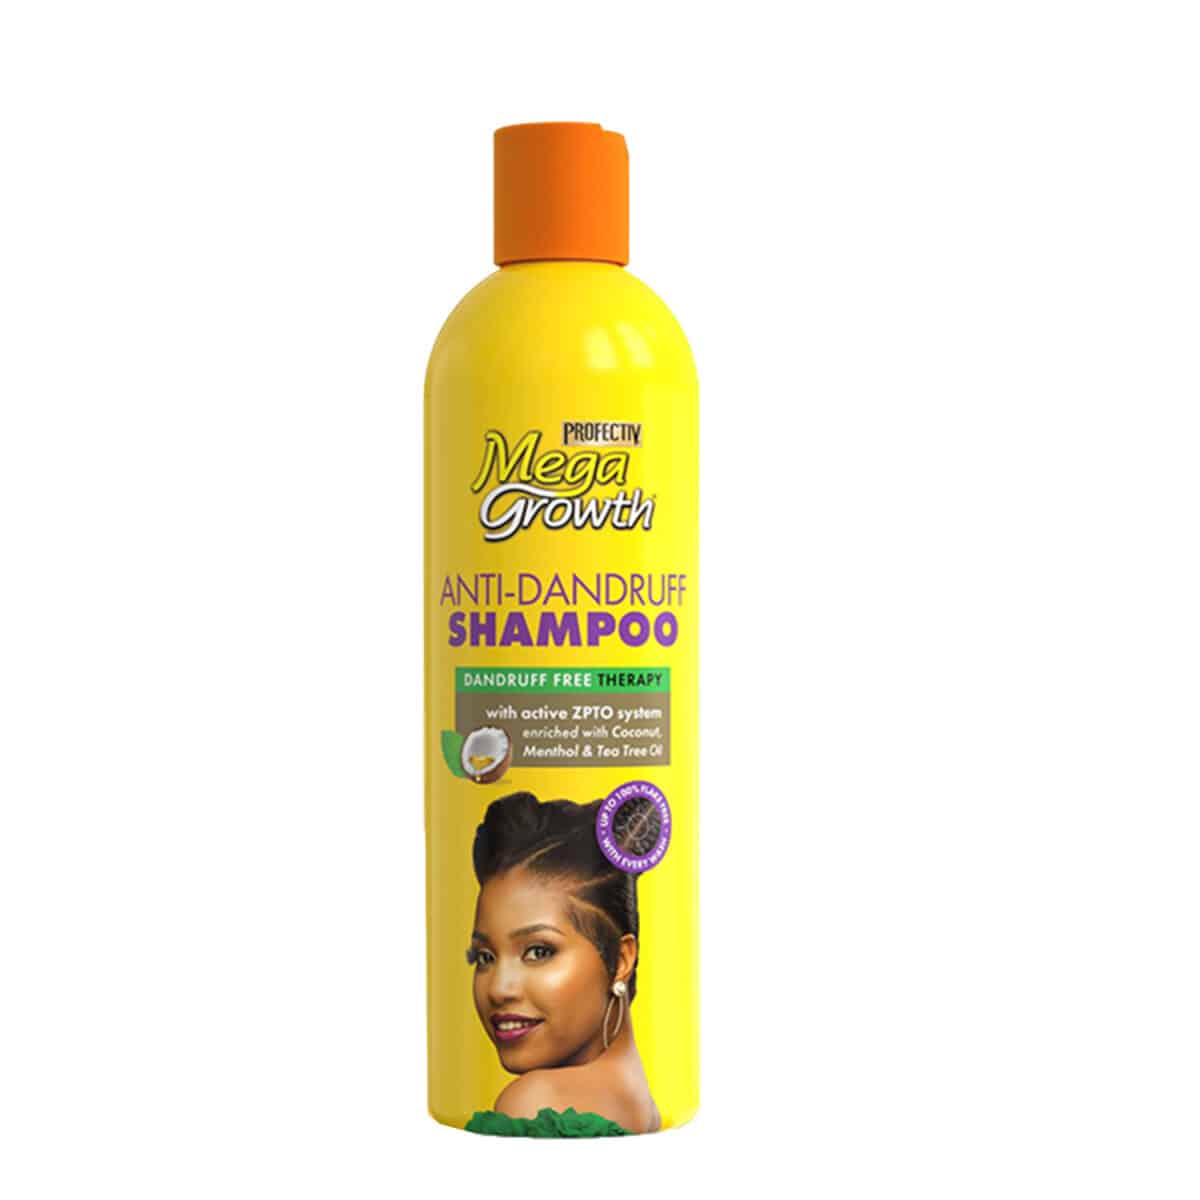 Buy shampoos onlline in nigeria